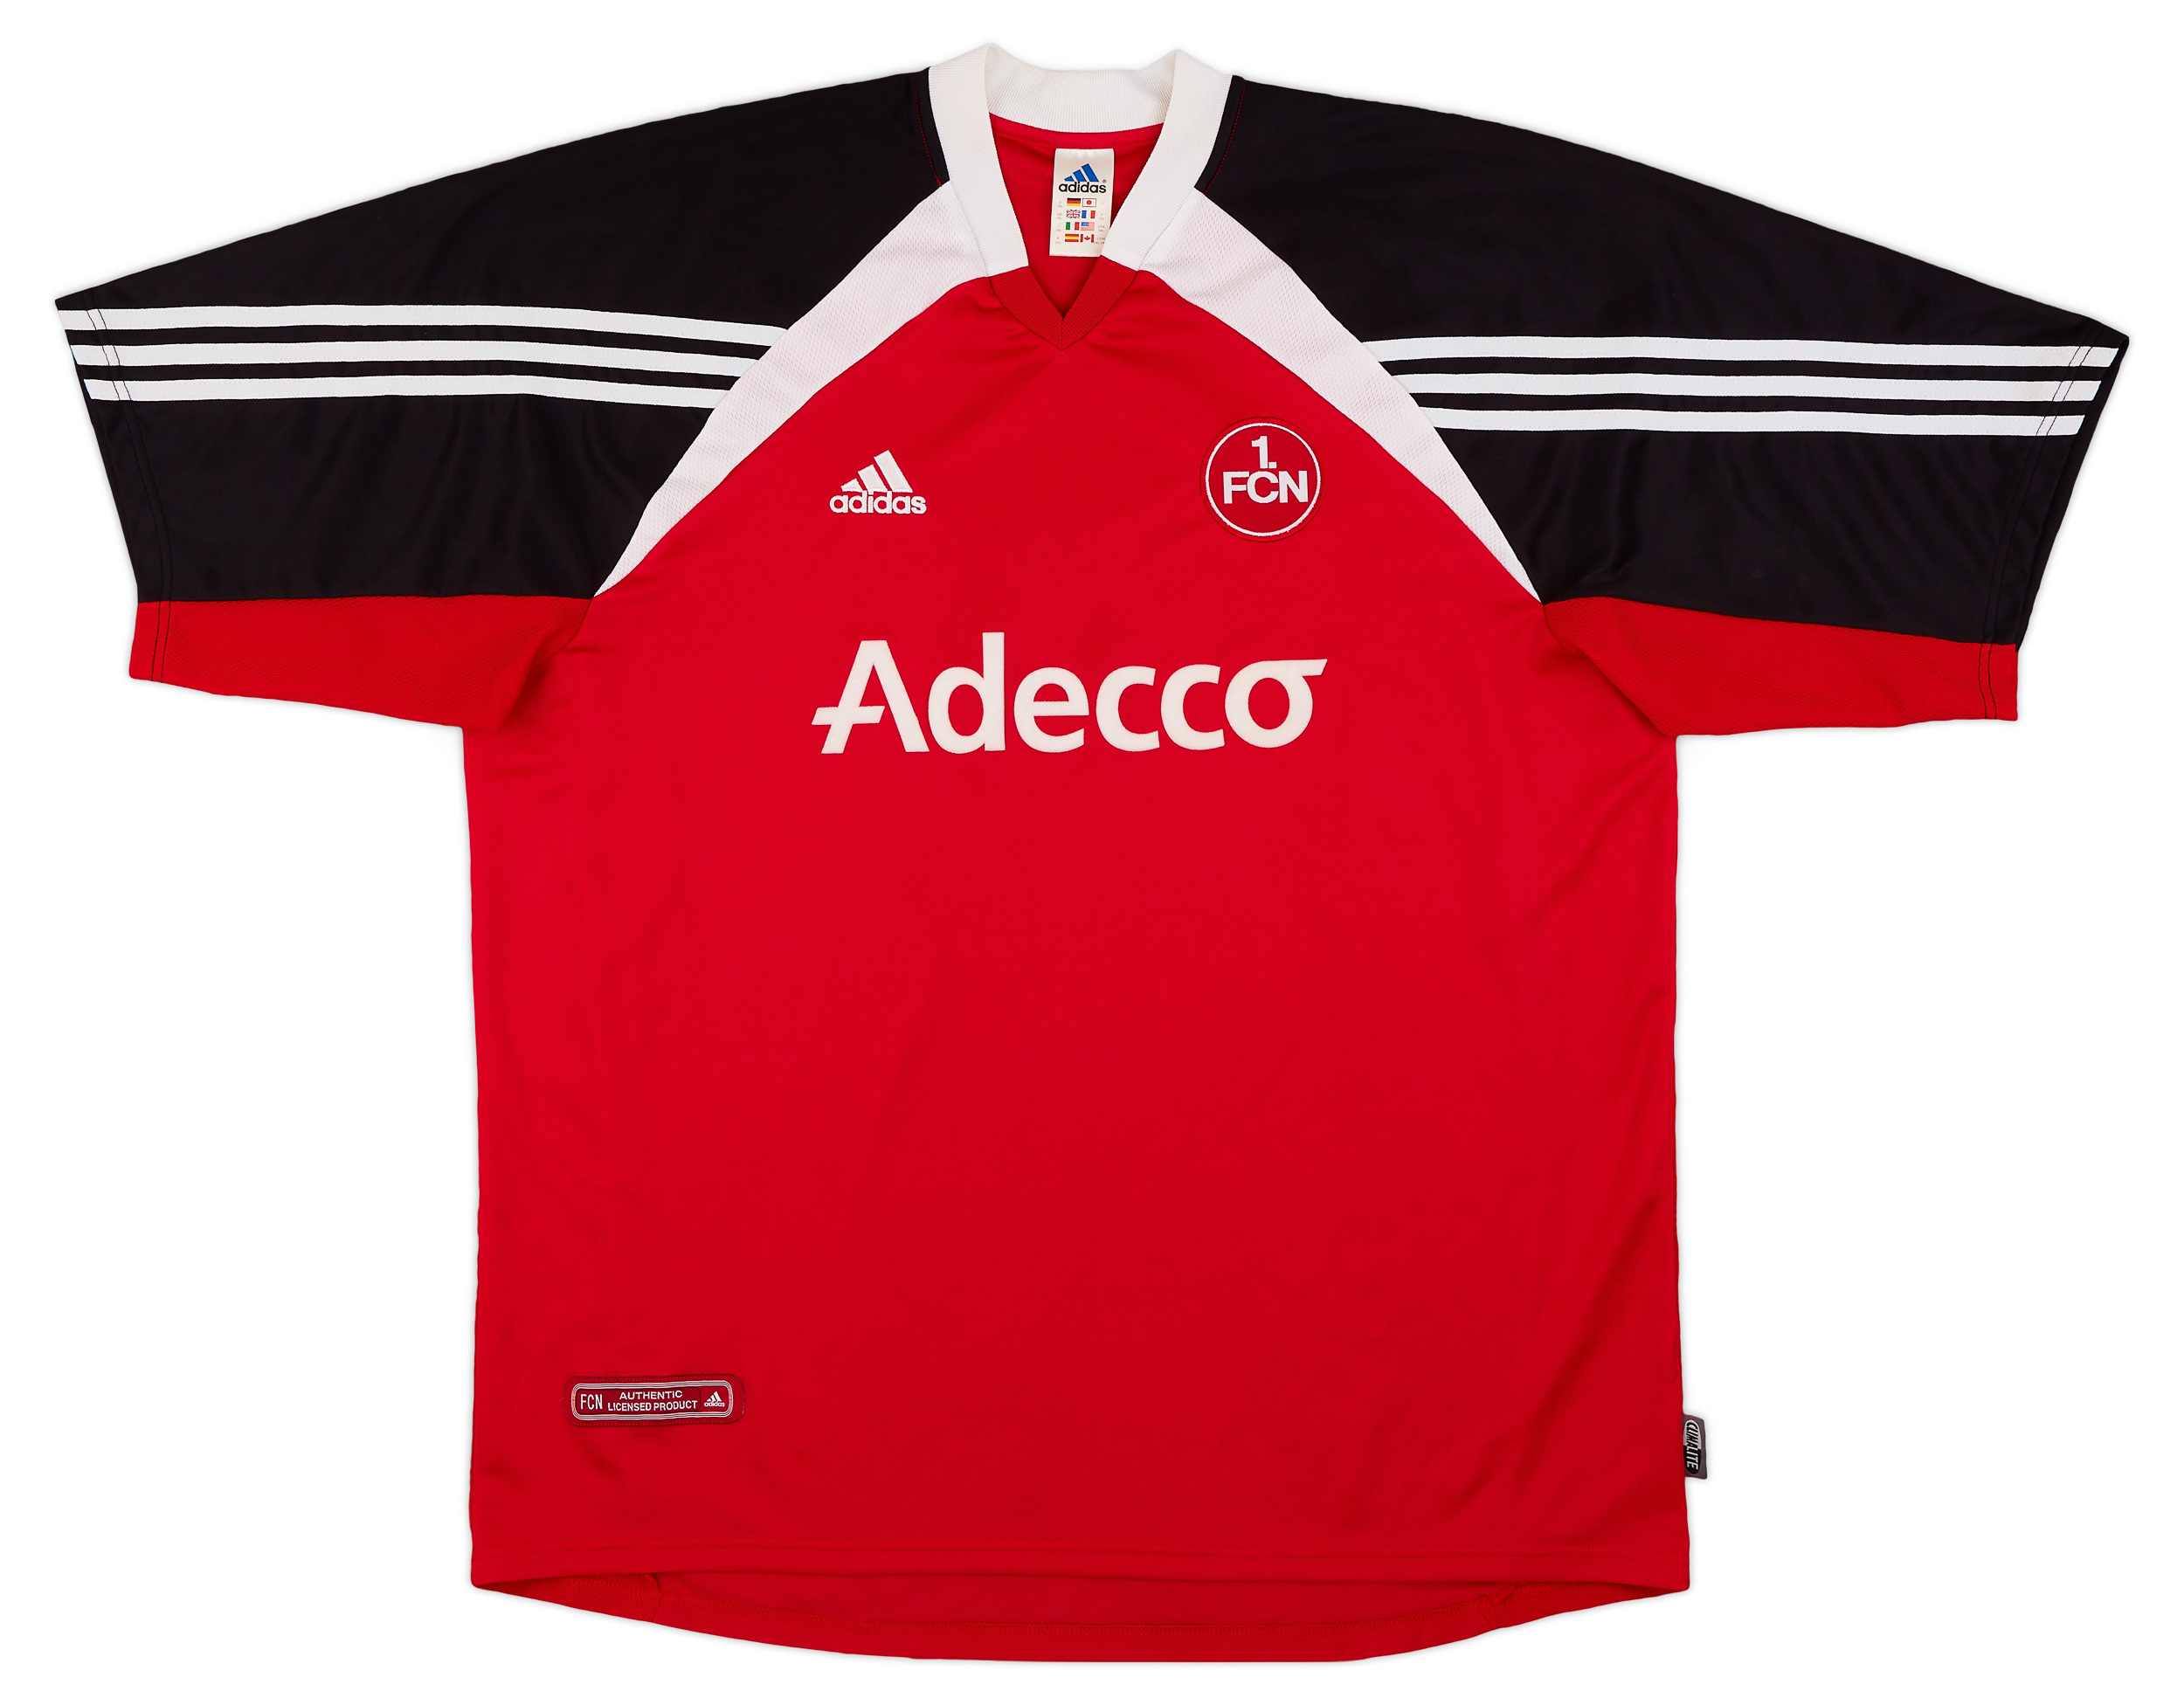 Nurnberg Visitante Camiseta de Fútbol 2000 - 2001. Sponsored by Adecco